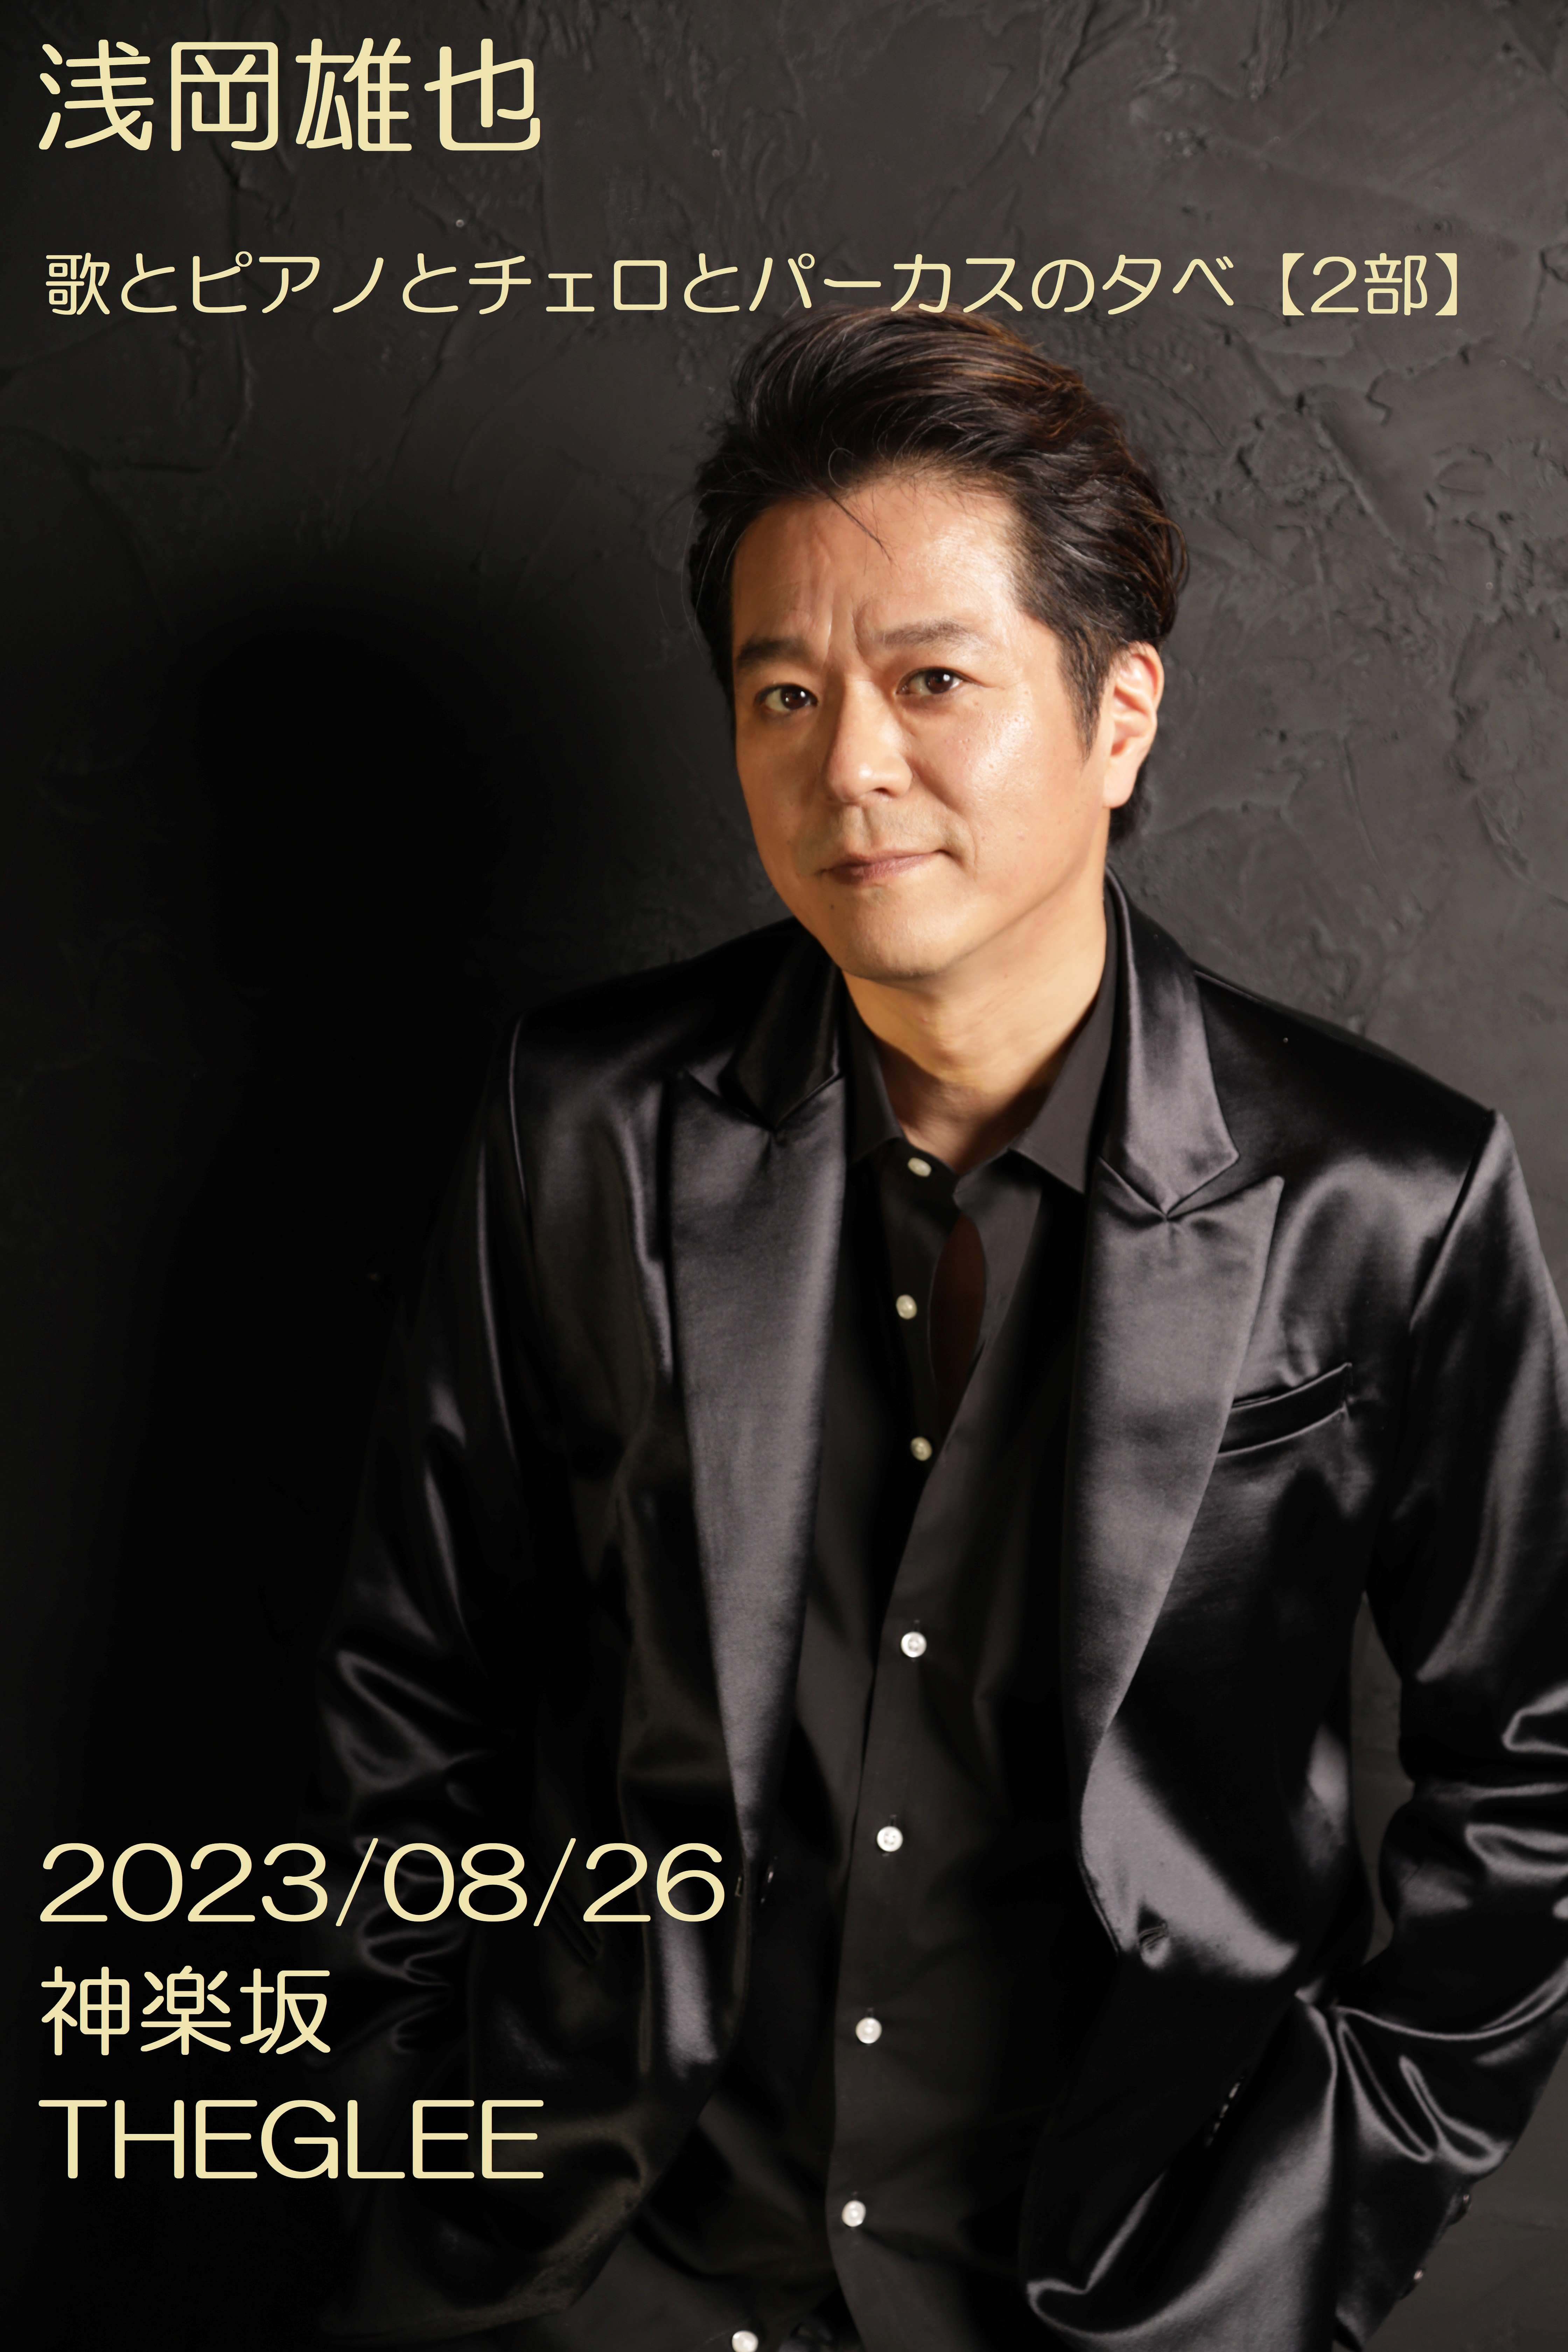 2部】浅岡雄也 歌とピアノとチェロとパーカスの夕べのチケット情報